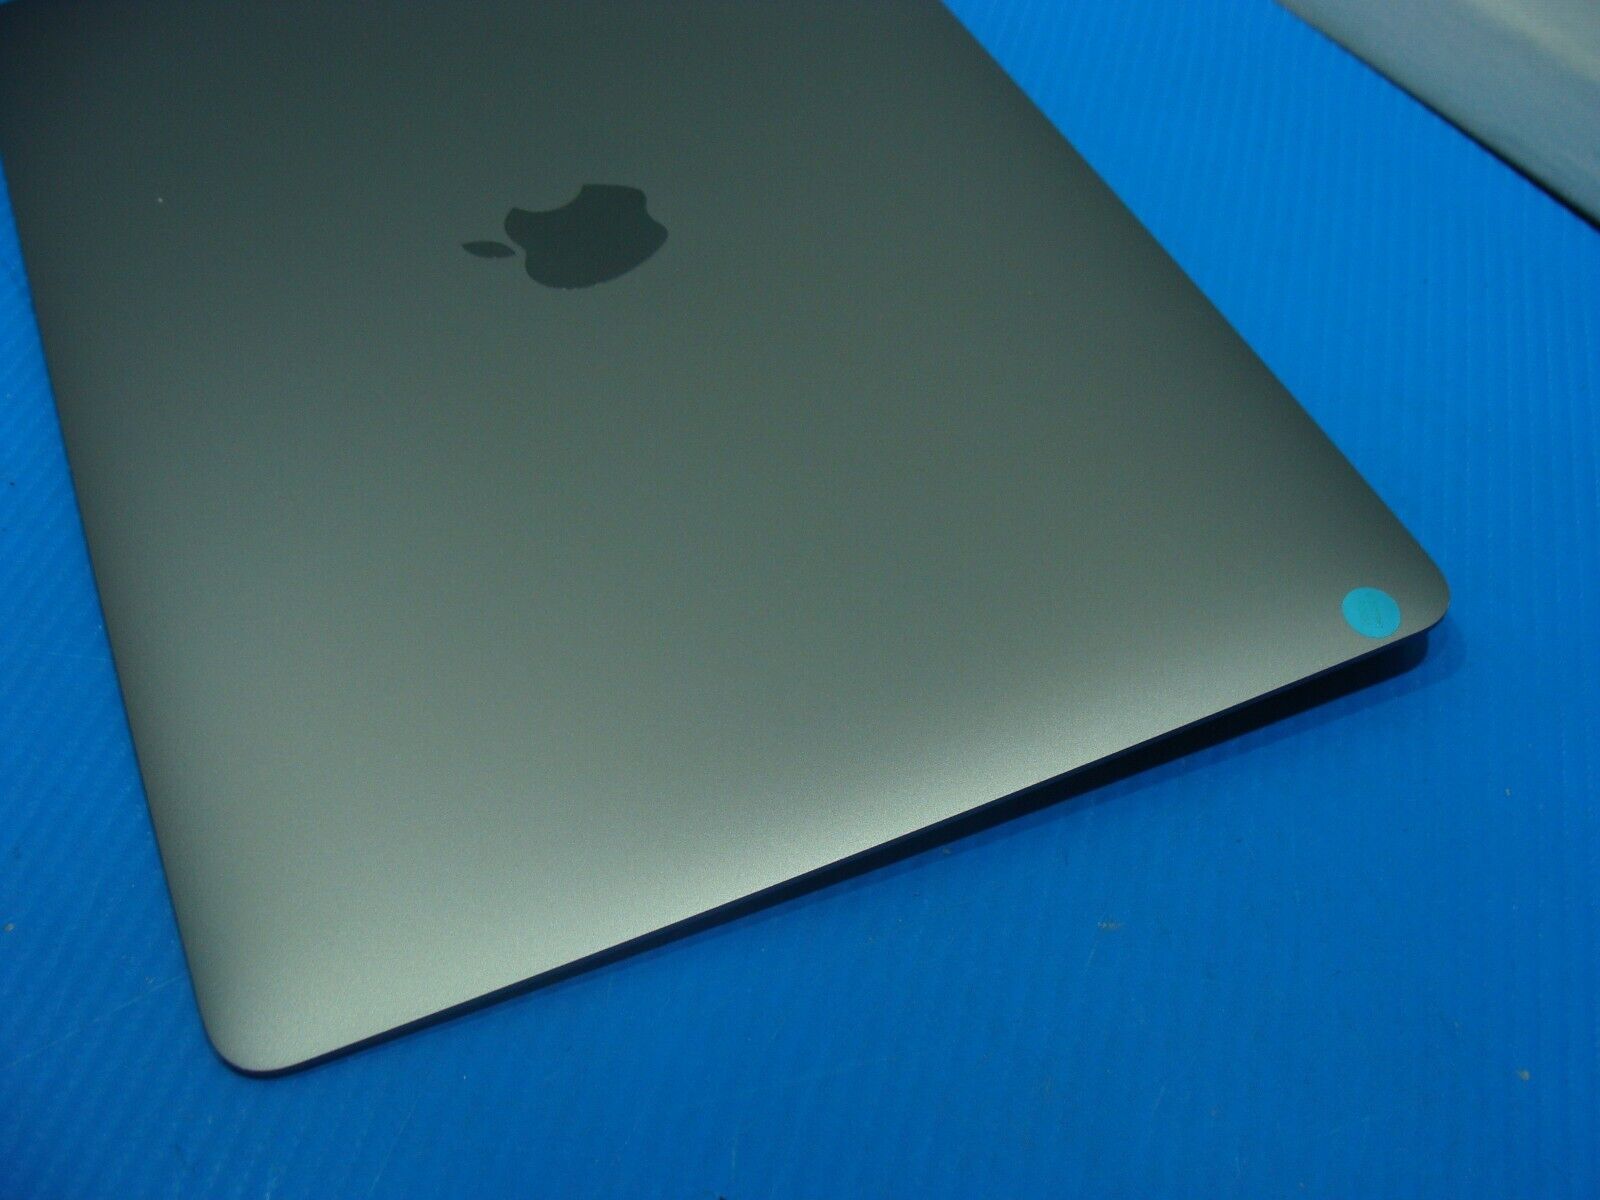 MacBook Pro A2159 13